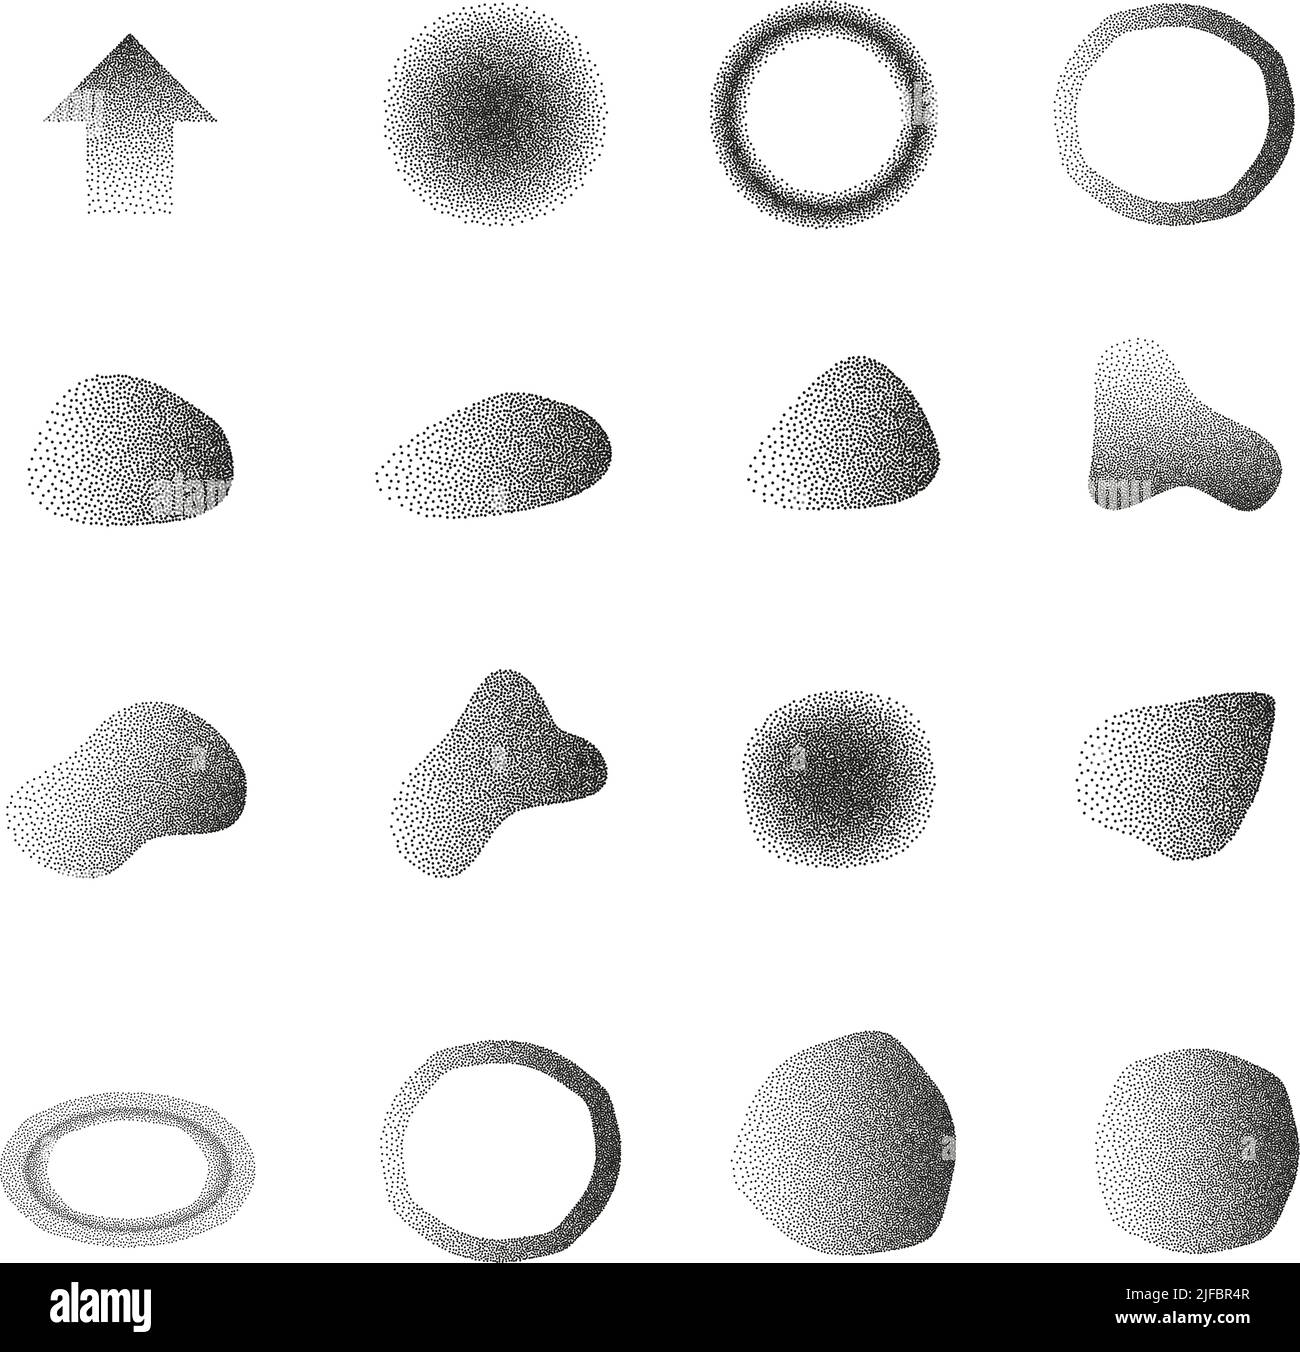 Sammlung von abstrakten und geometrischen Formen mit Stipple Gradient Effekt isoliert auf weißem Hintergrund, Design-Element Vektor-Illustration Stock Vektor